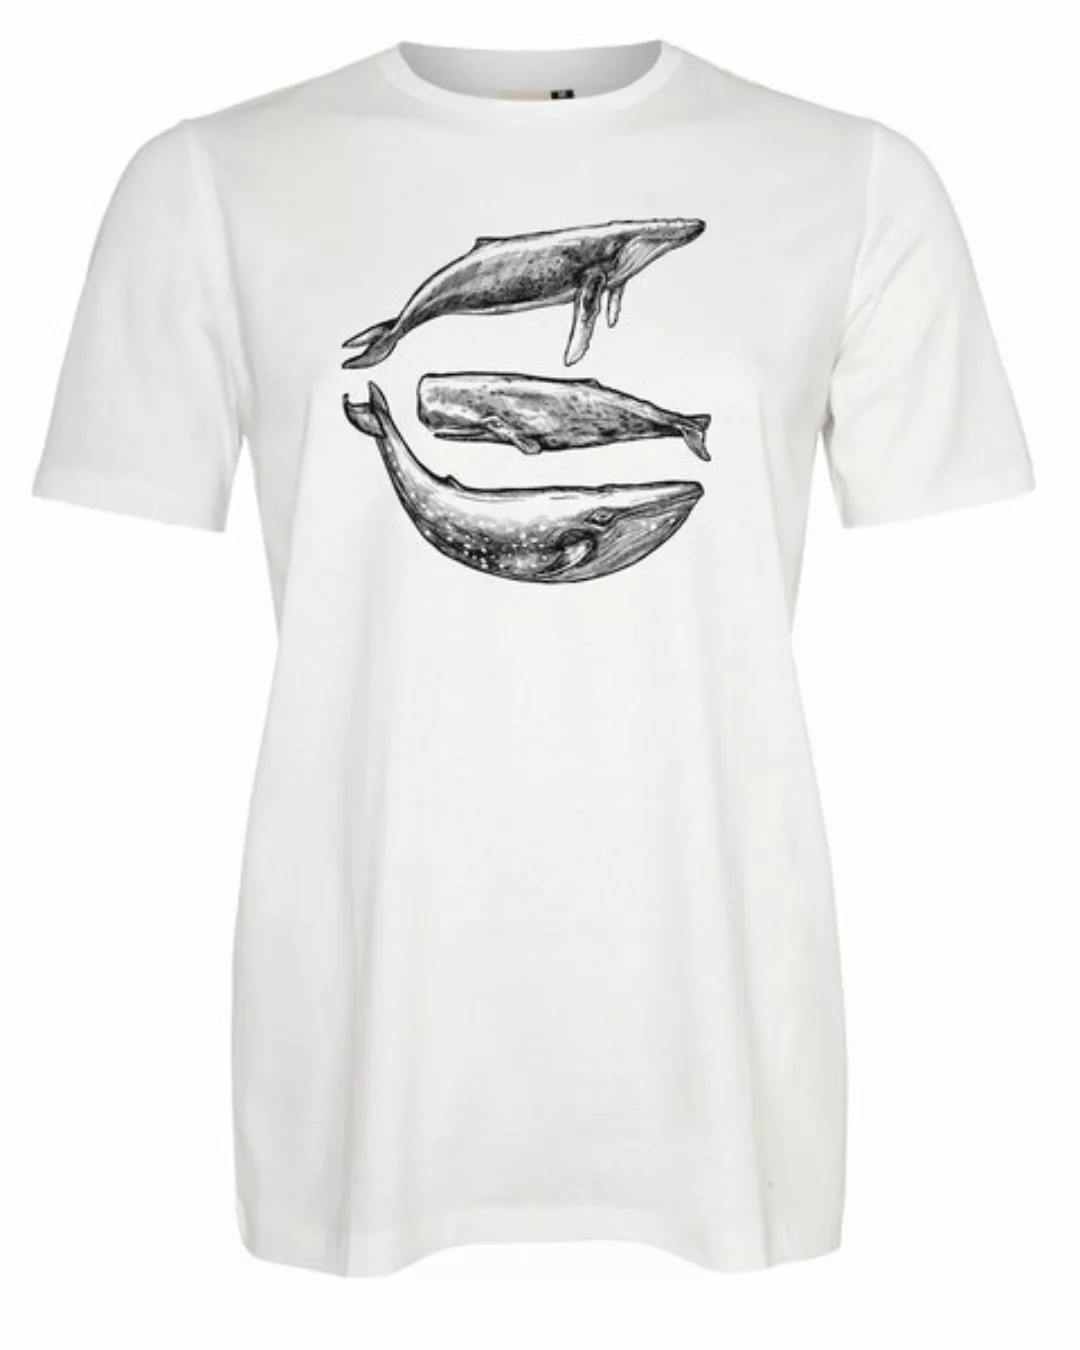 Herren T-shirt "Three Whales" Hergestellt In Kenia. 100% Biobaumwolle günstig online kaufen